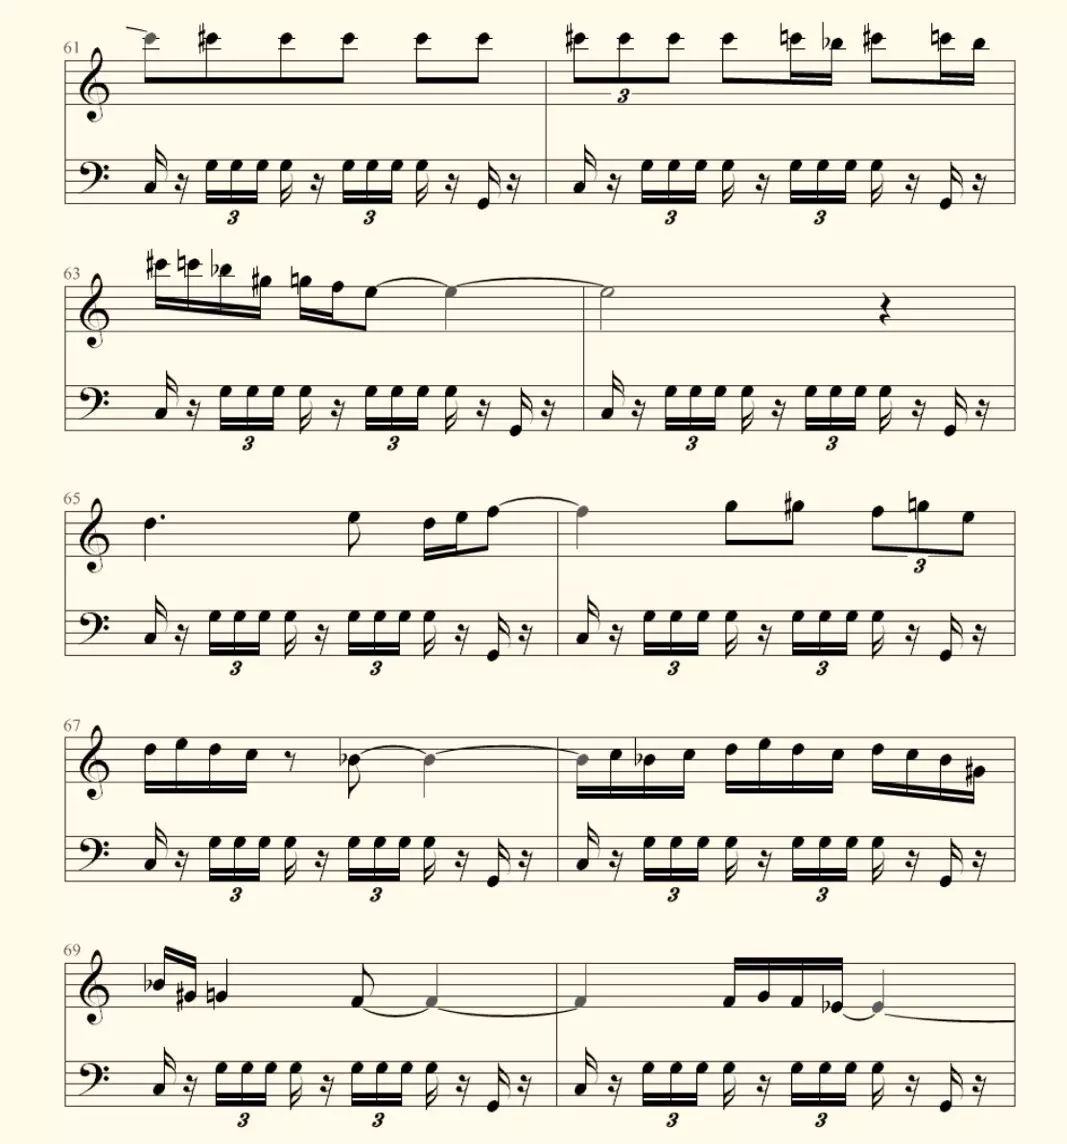 一首《波莱罗舞曲》,让五线谱上的音符们都复活了!(附